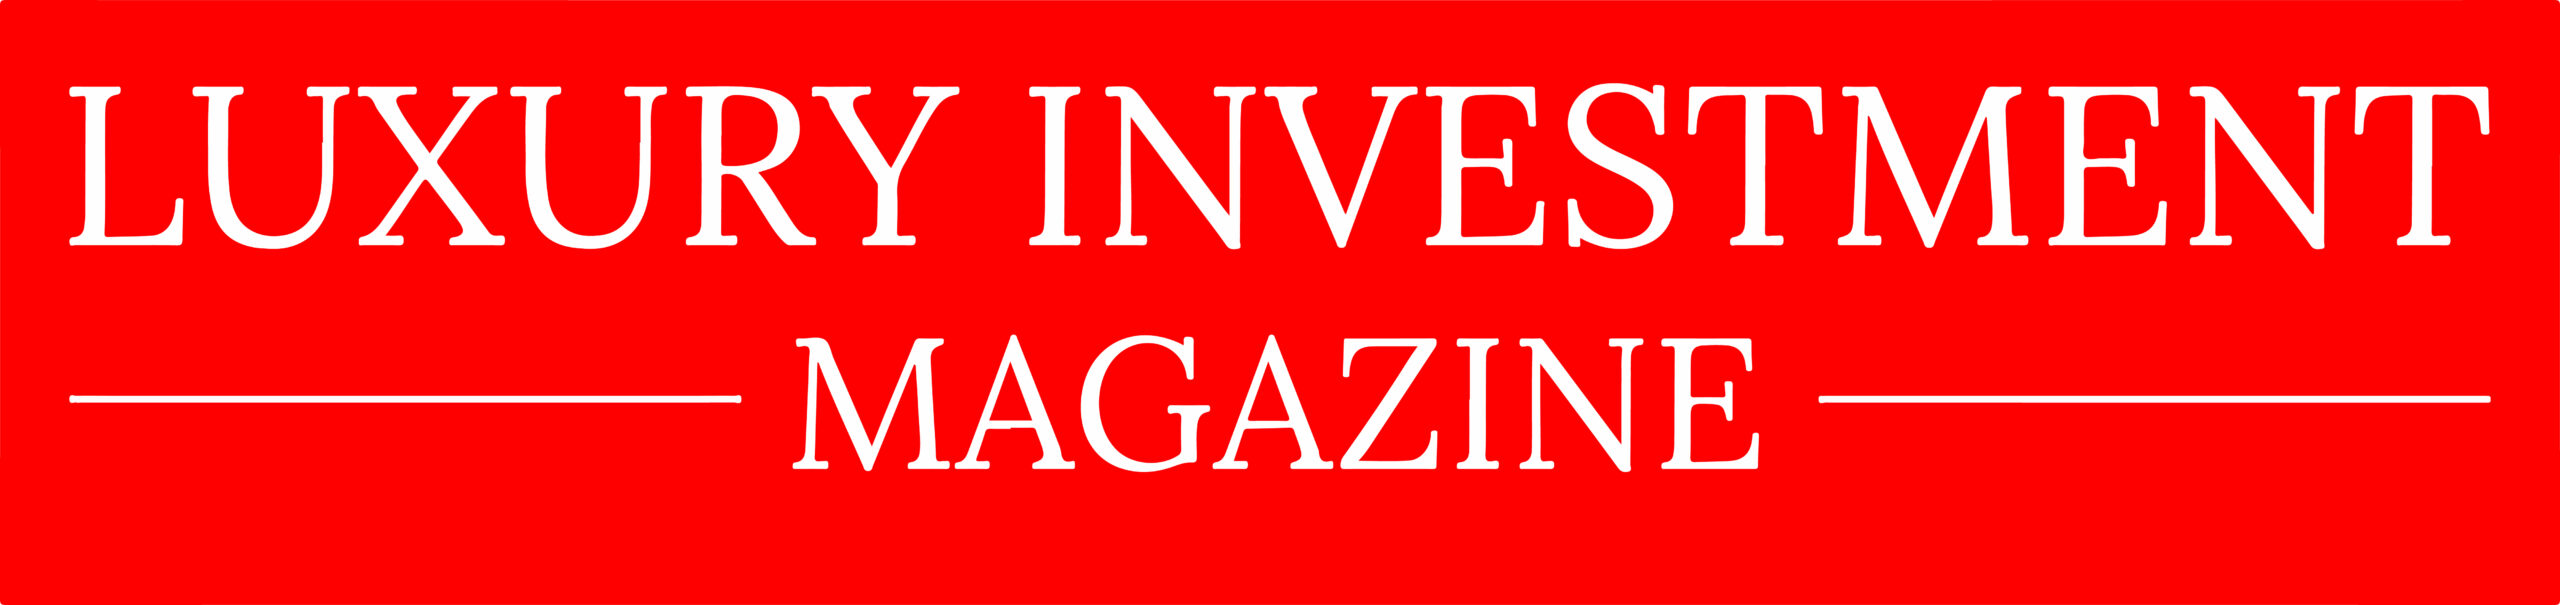 Luxury Investment Magazine www.luxuryinvestmentmagazine.com edited in English